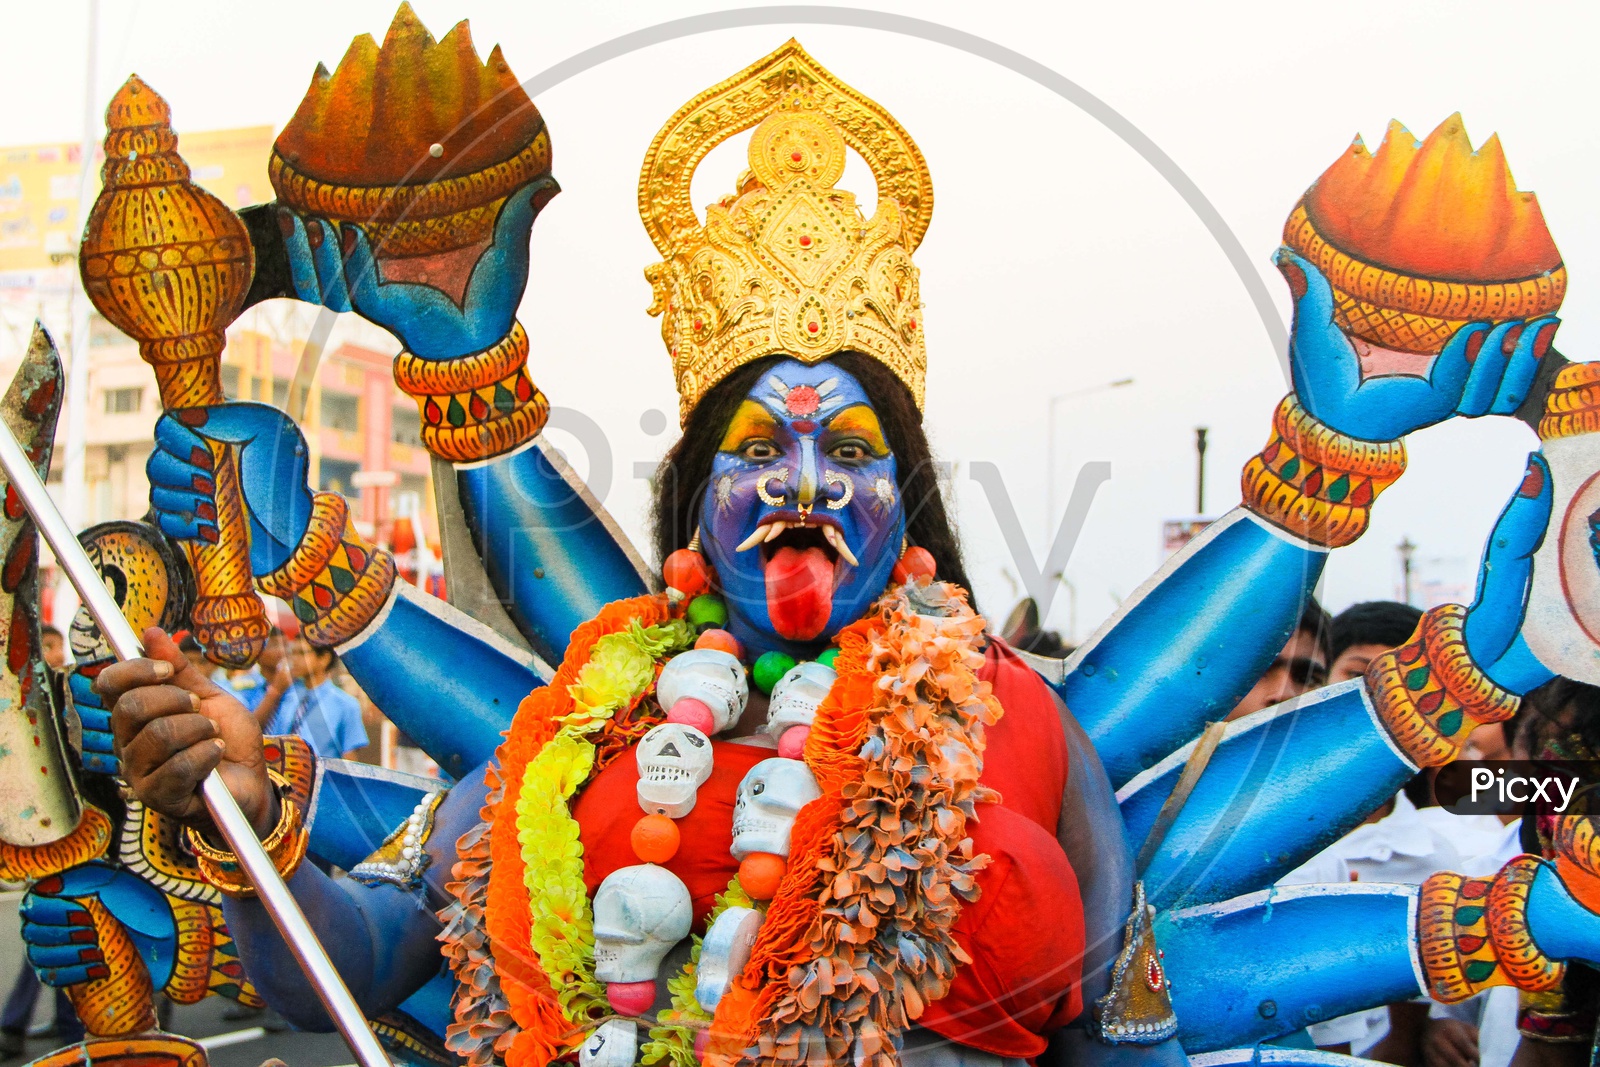 An artist got dressed as Maa kaali, Hindu Goddess